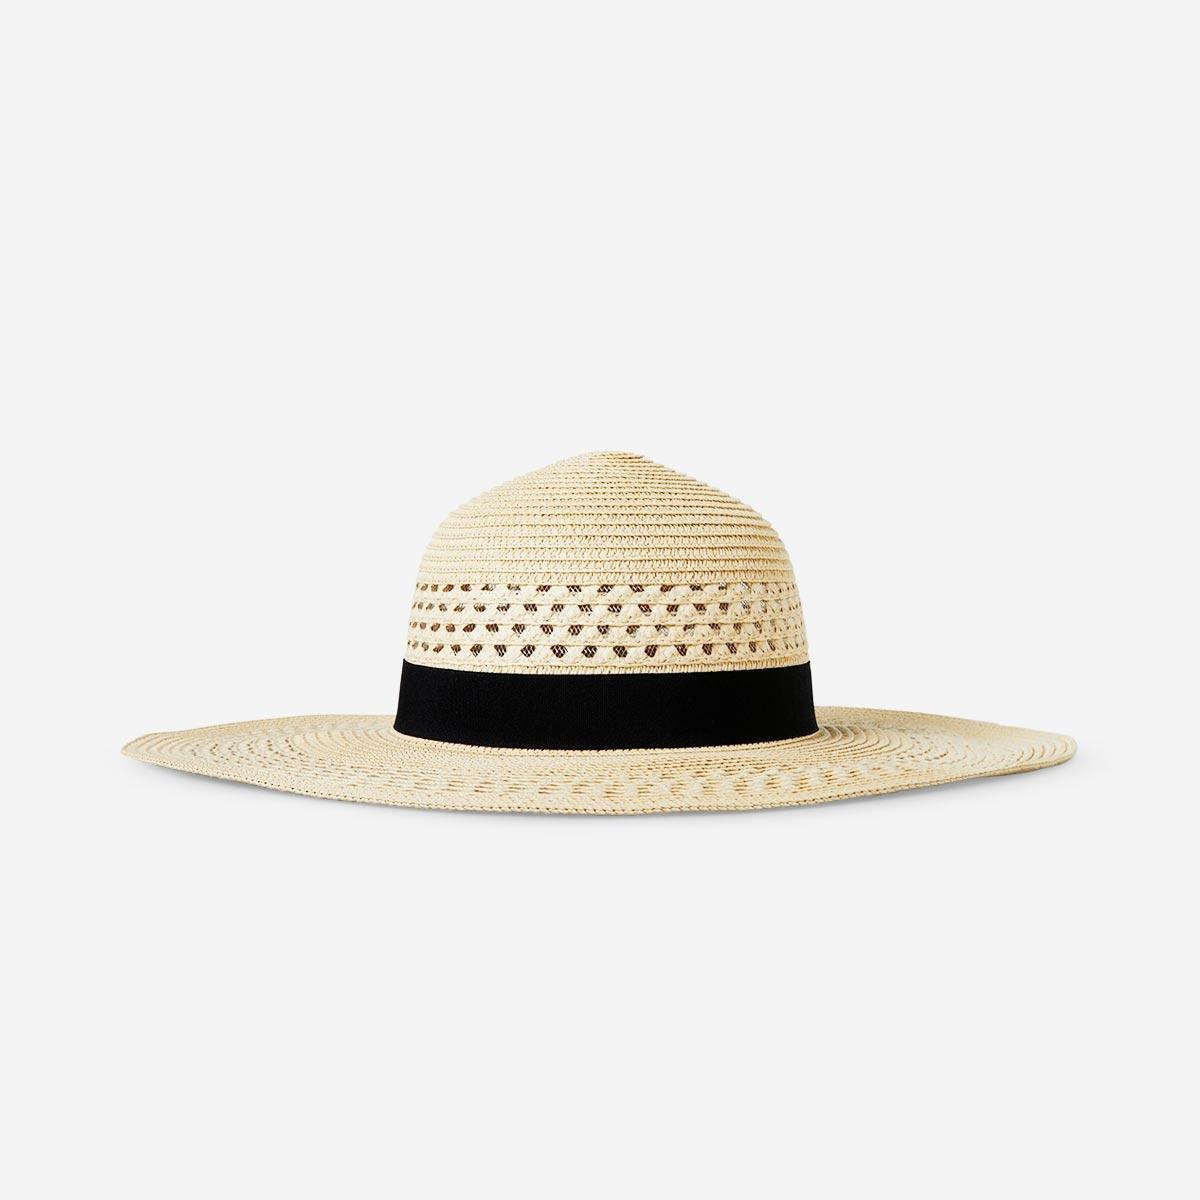 Straw summer hat